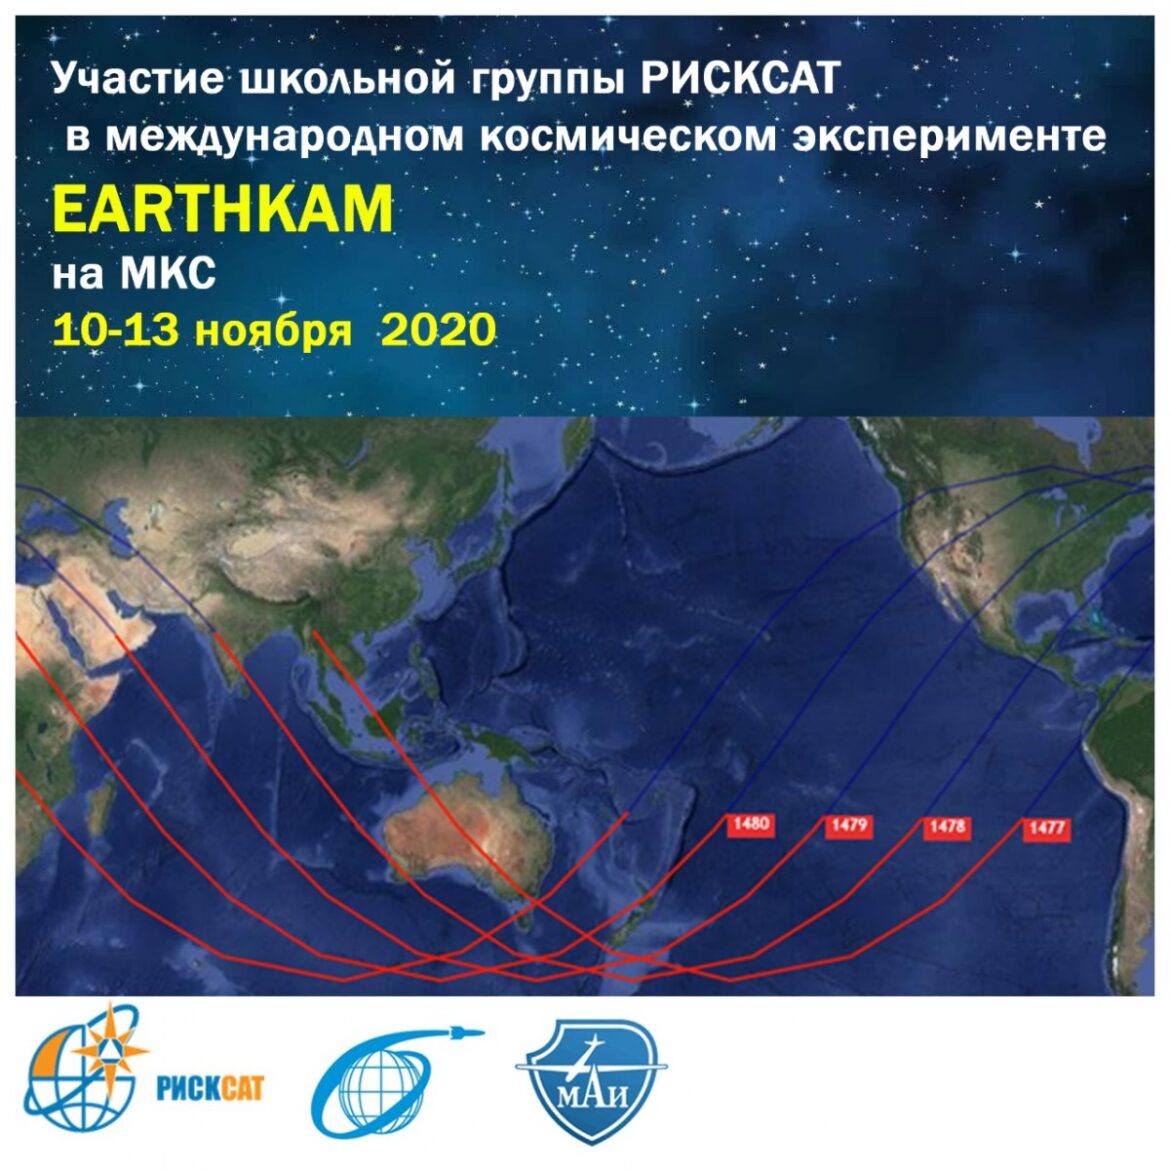 Компания РИСКСАТ приняла участие в международном космическом эксперименте EARTHKAM по съёмке Земли с борта МКС по заявкам школьников